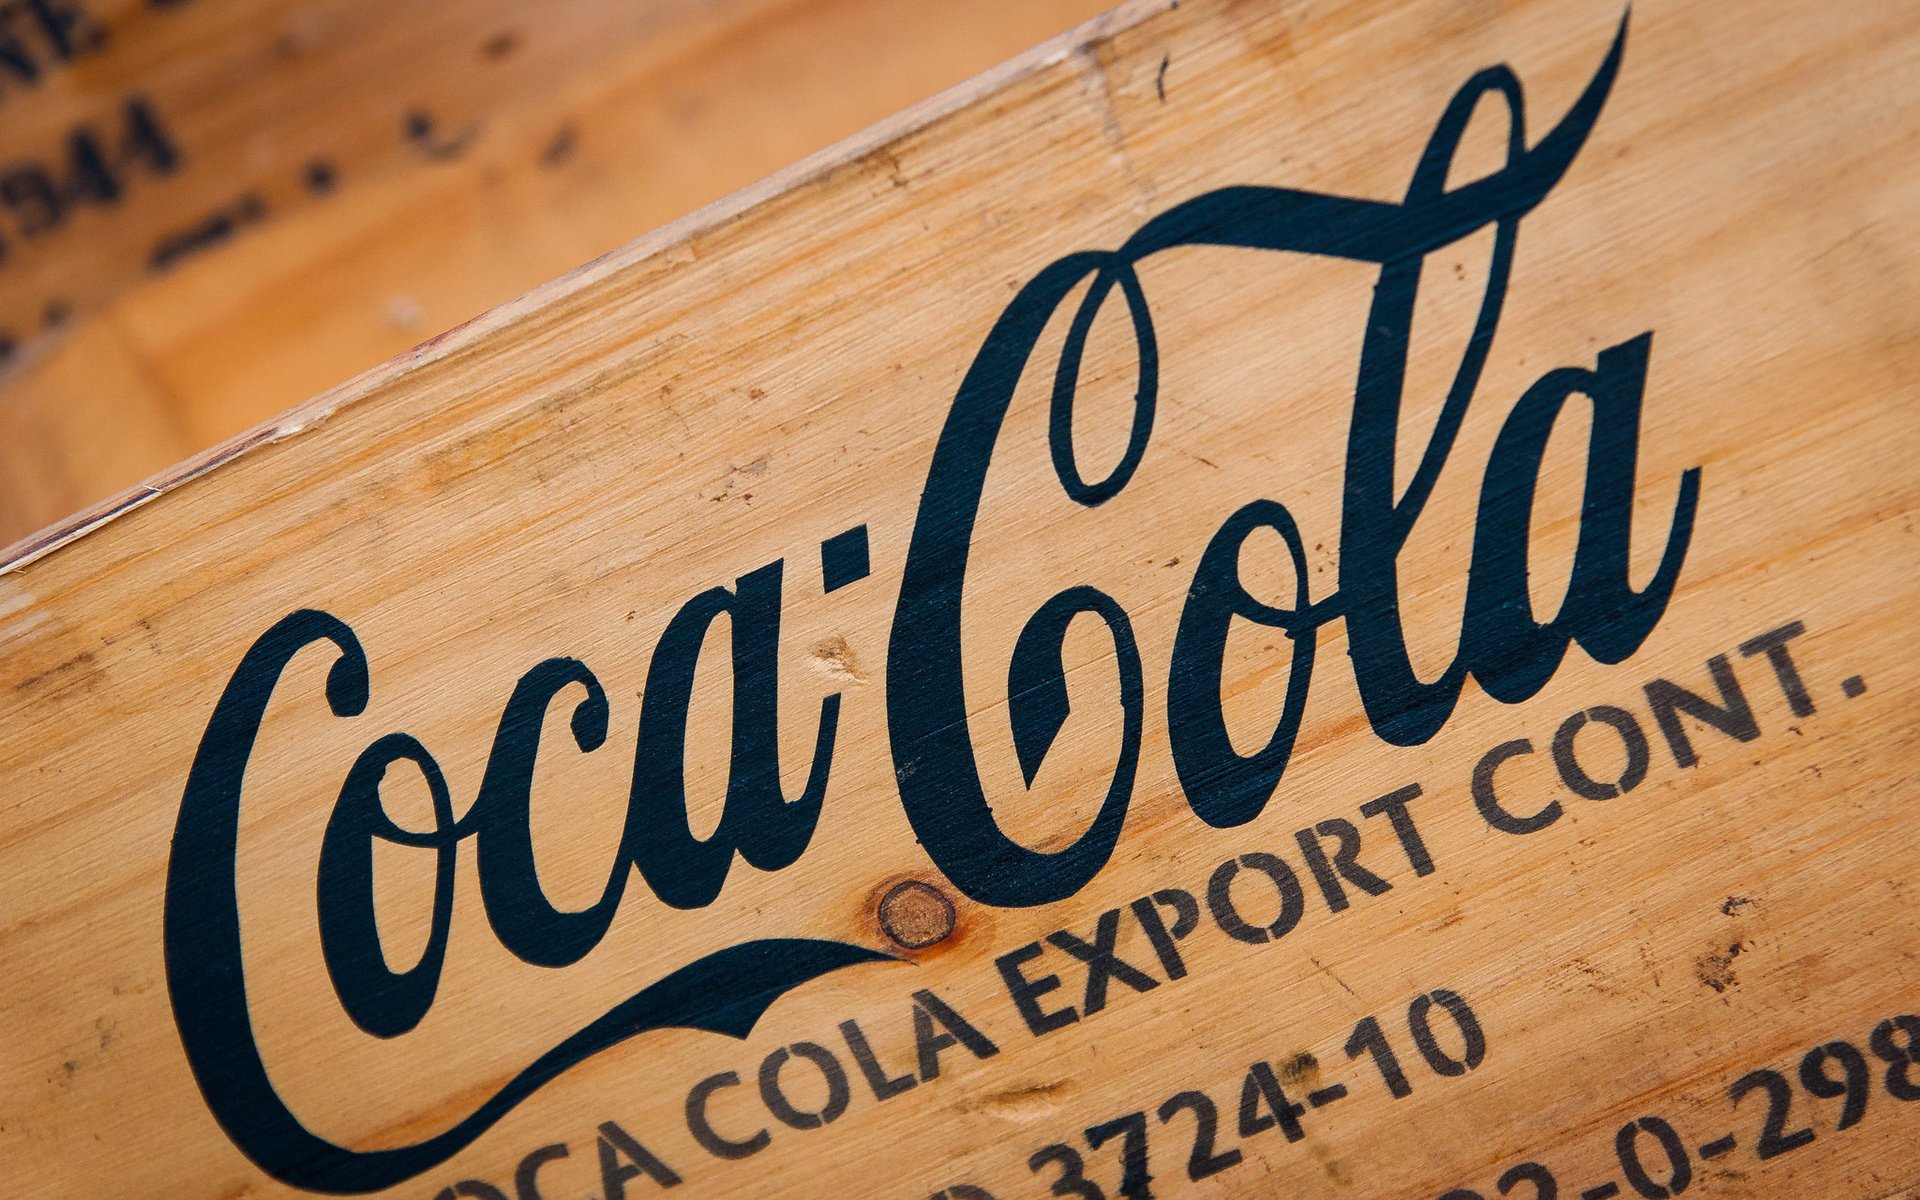 Coca Cola логотип